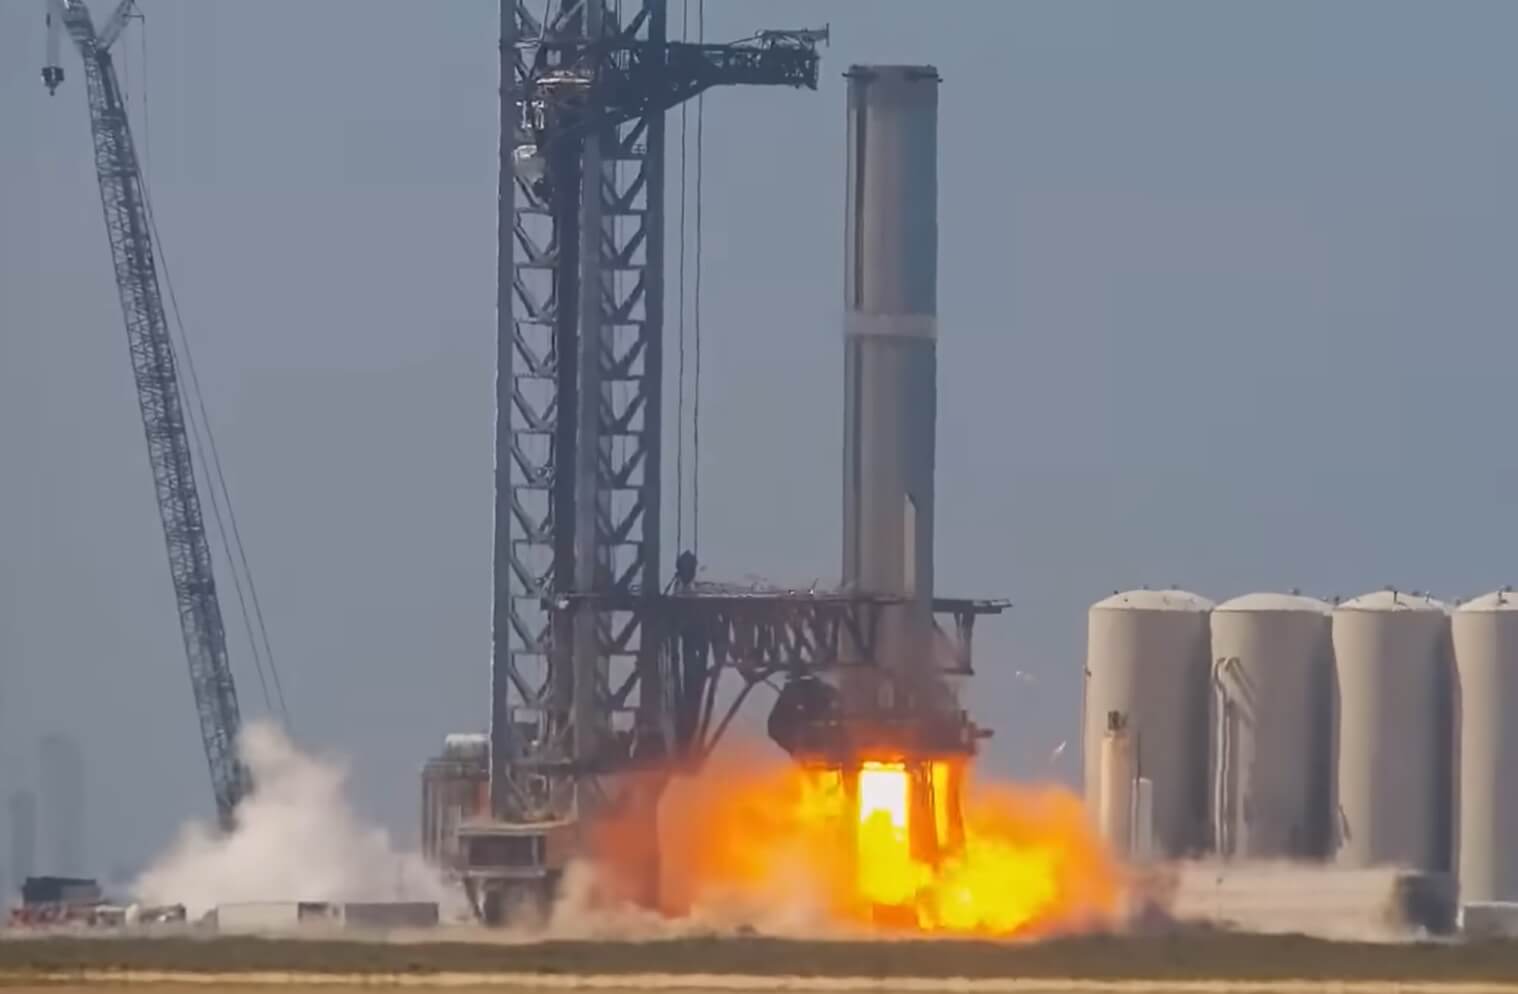 Ракета Илона Маска взорвалась во время испытаний. Полет на Марс отменяется?